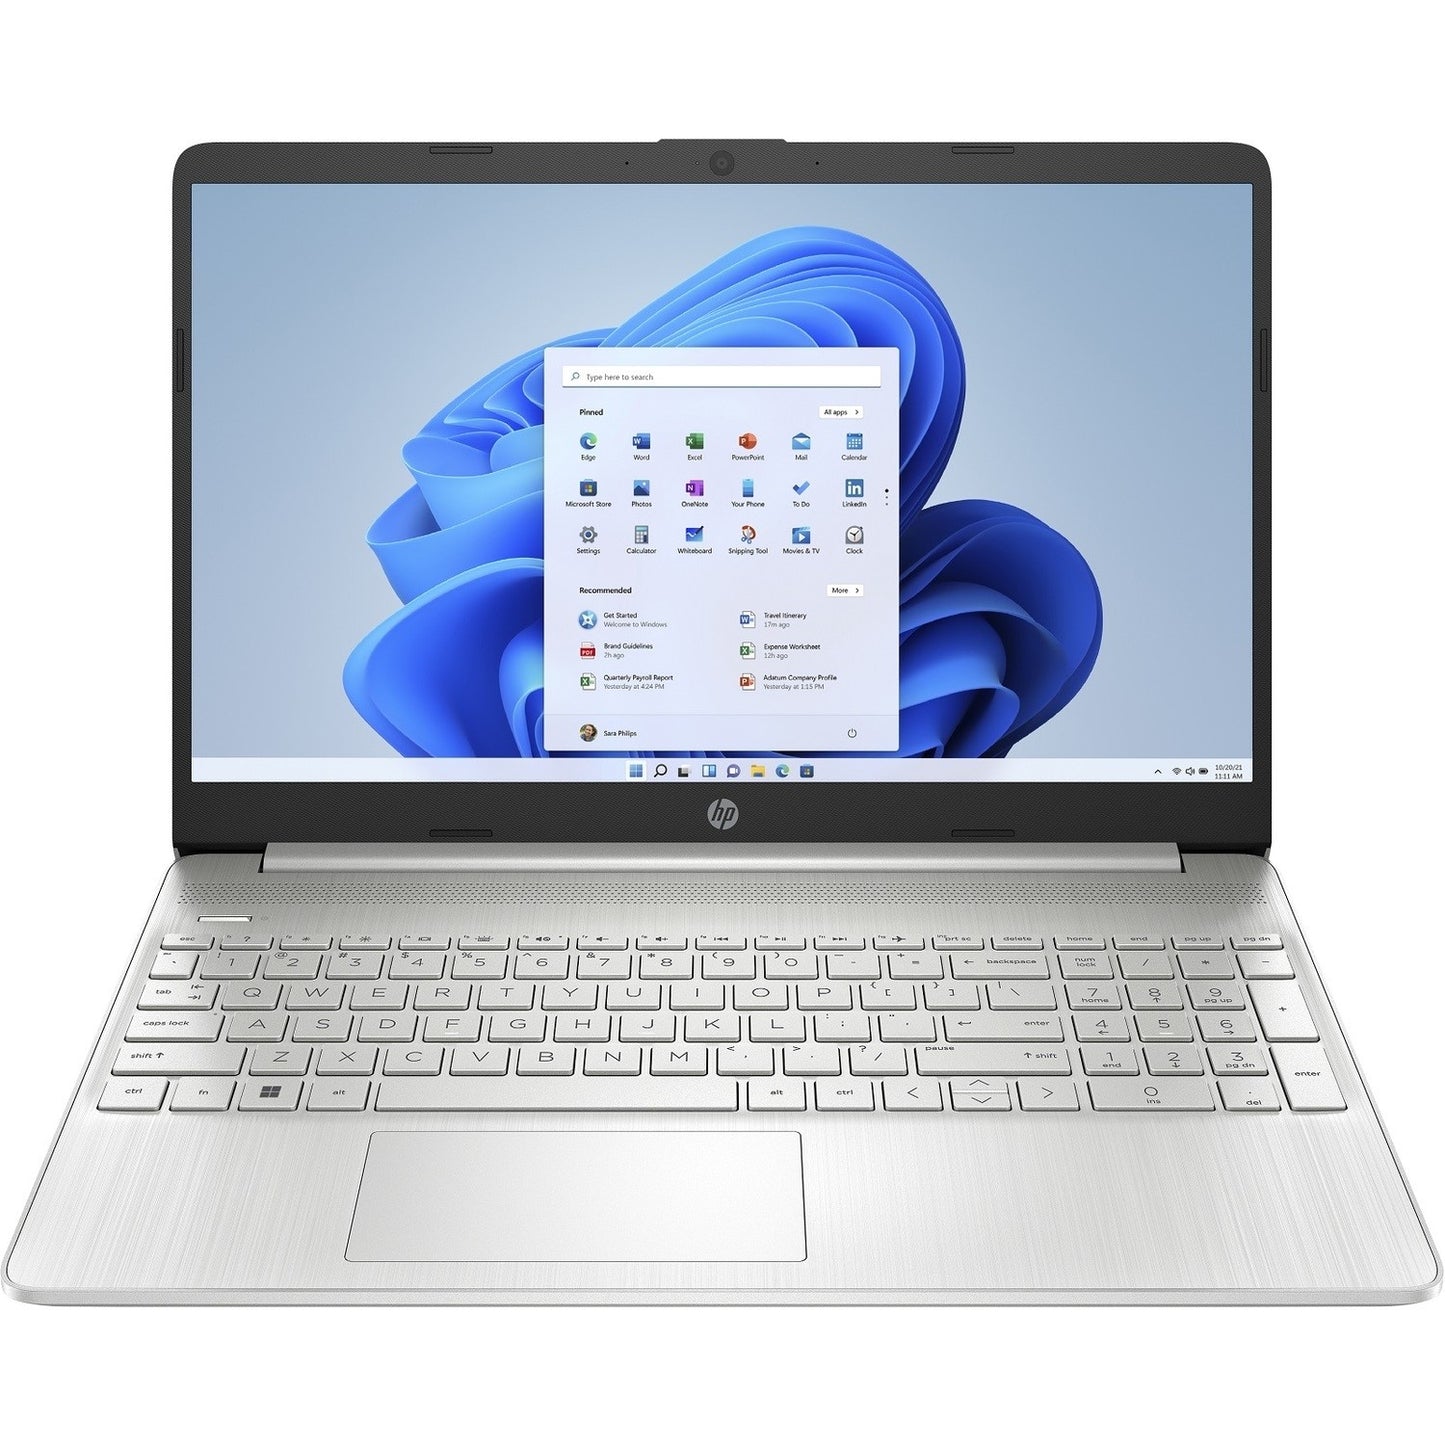 HP 15.6" Laptop- Intel Pentium Quad-Core CPU - 4GB RAM - 128GB SSD